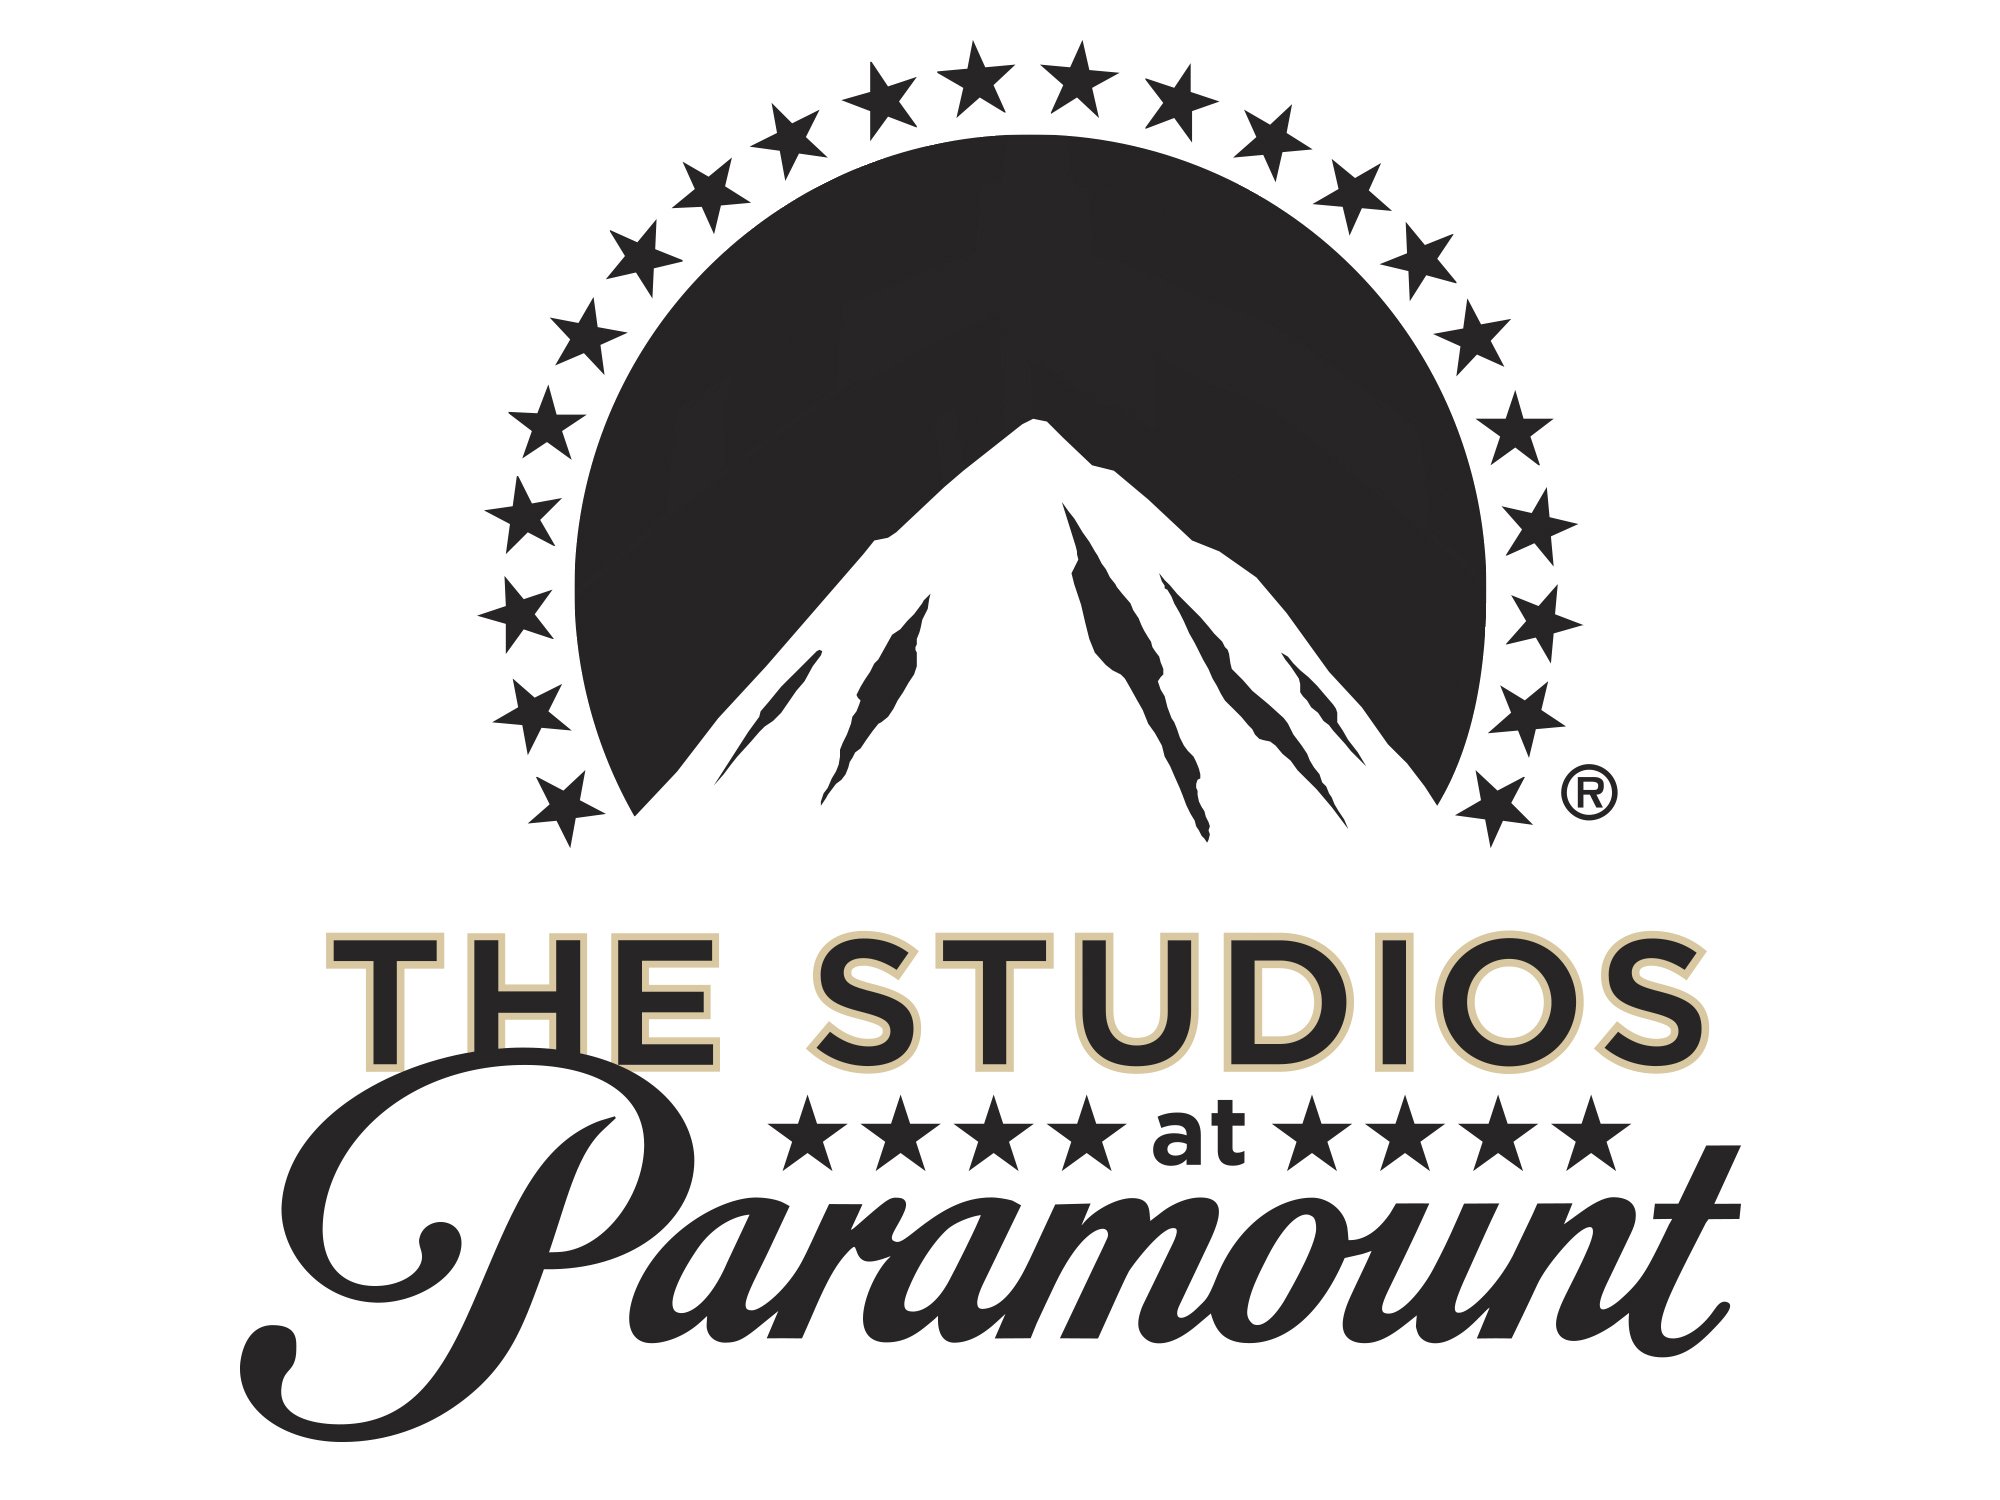 Парамаунт перевод. Студия Парамаунт Пикчерз. Paramount логотип. Кинокомпания Paramount pictures. Эмблема Парамаунт Пикчерз.